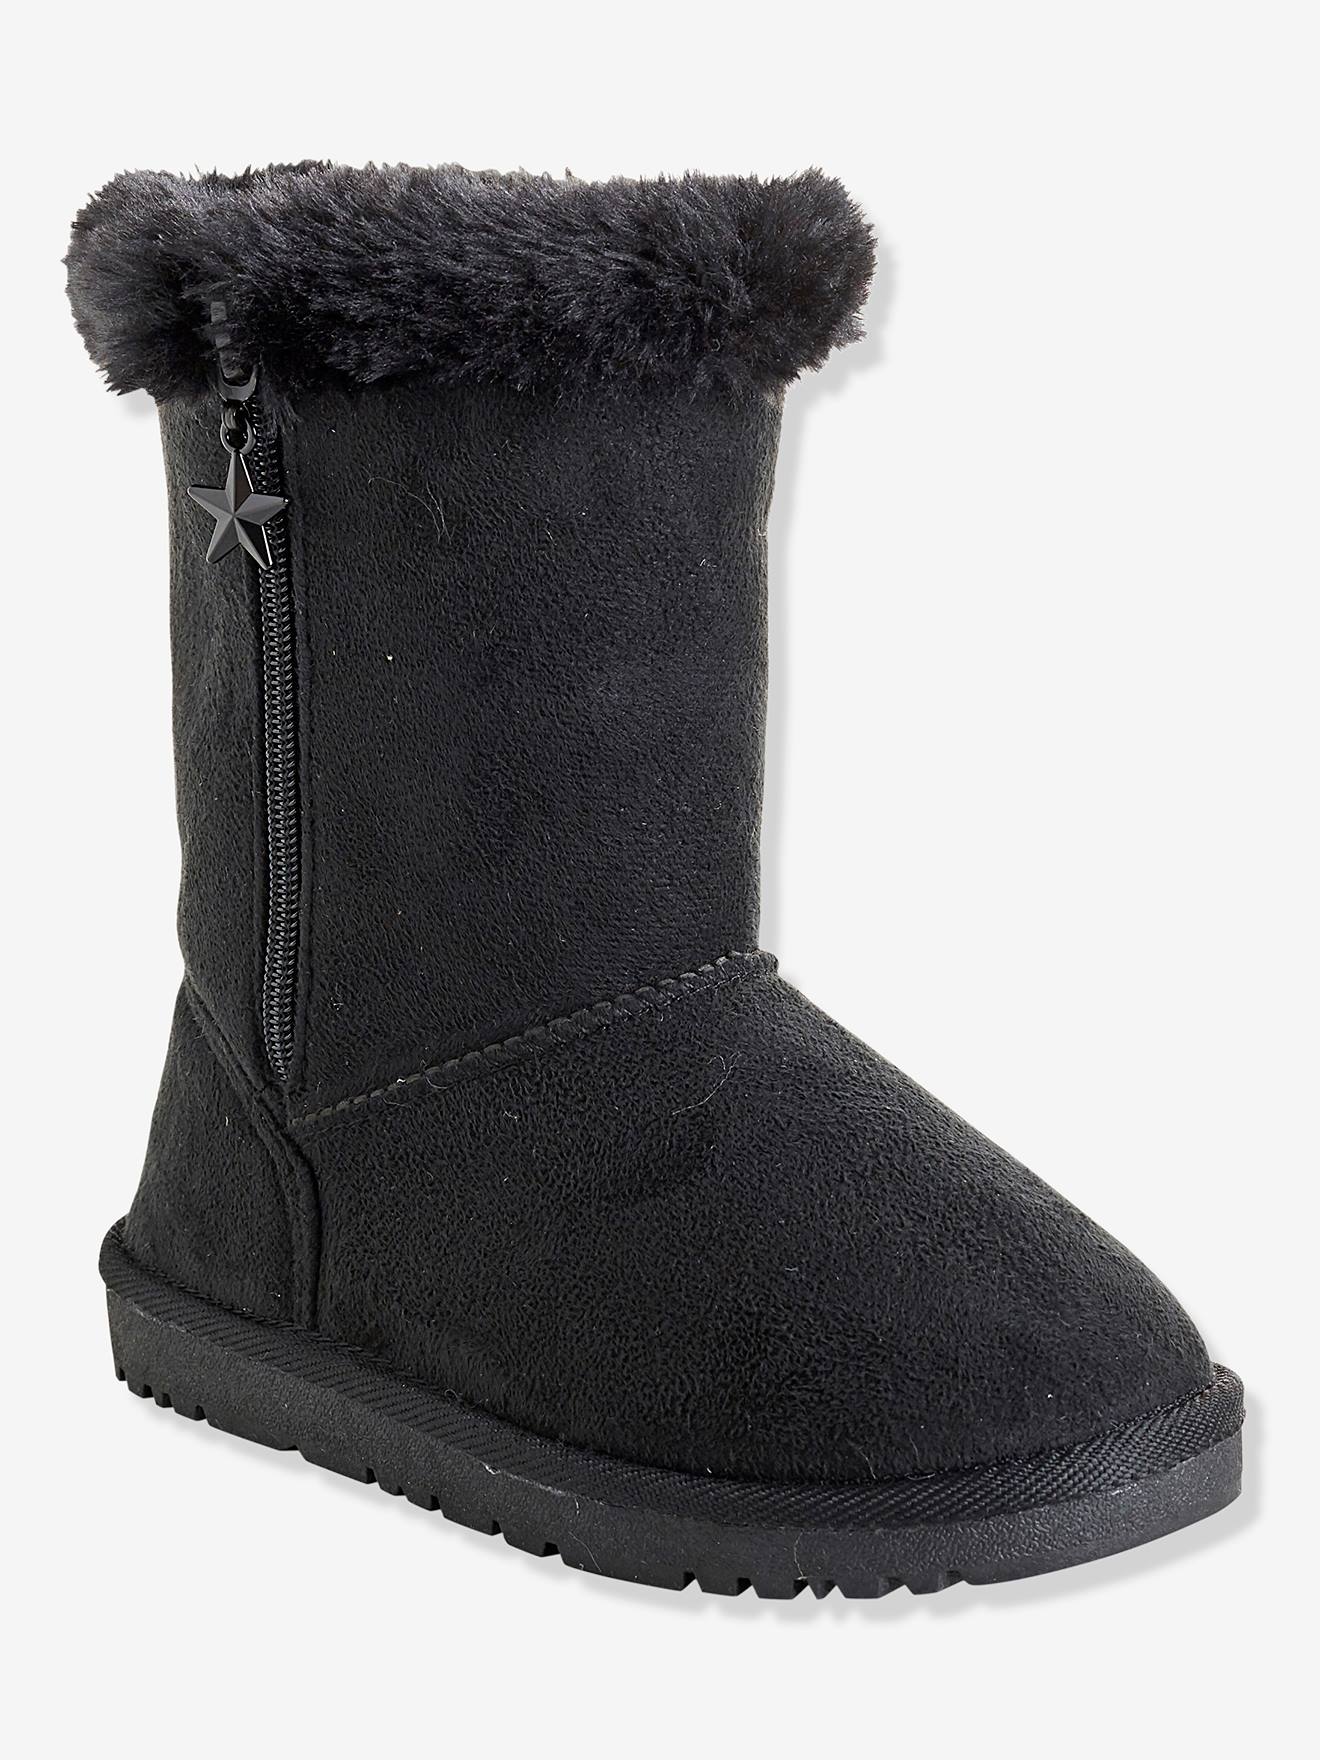 Girls' Boots with Fur - black dark 